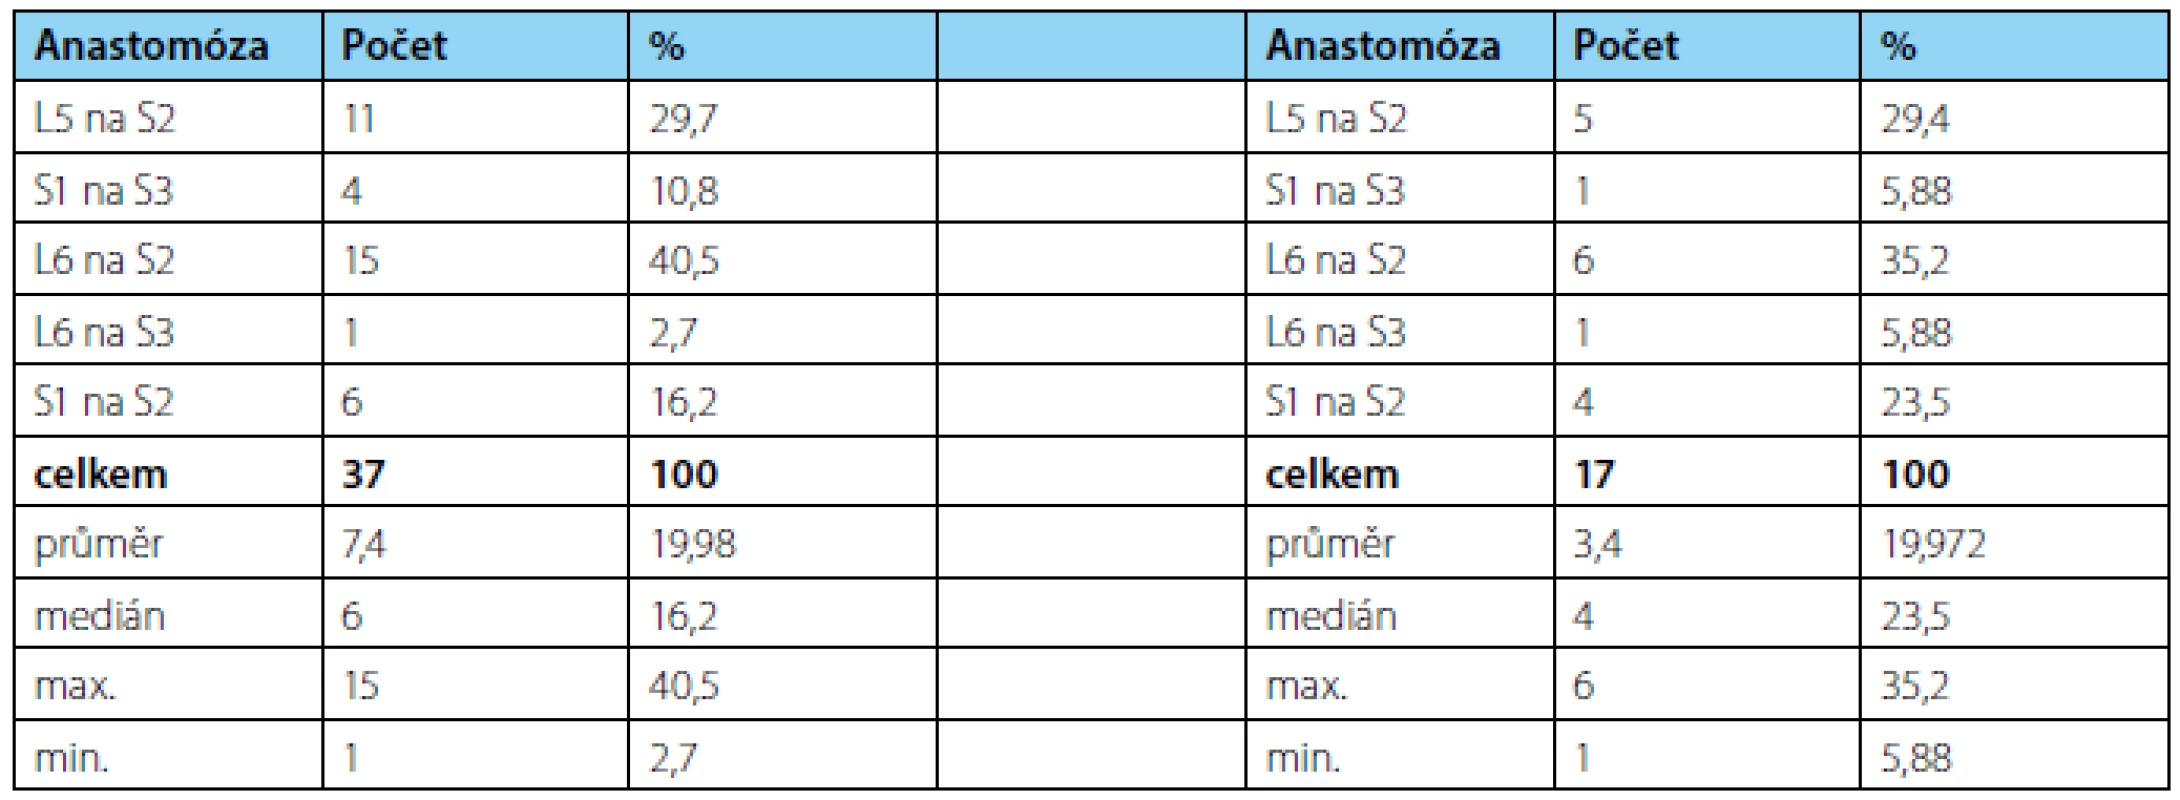 Četnost anastomóz použitých kořenů při první operaci (vlevo), při reoperaci a kontrolním měření (vpravo)
Tab. 1. Frequency of used ventral roots anastomosis at first surgery (left) and control measuring (right)